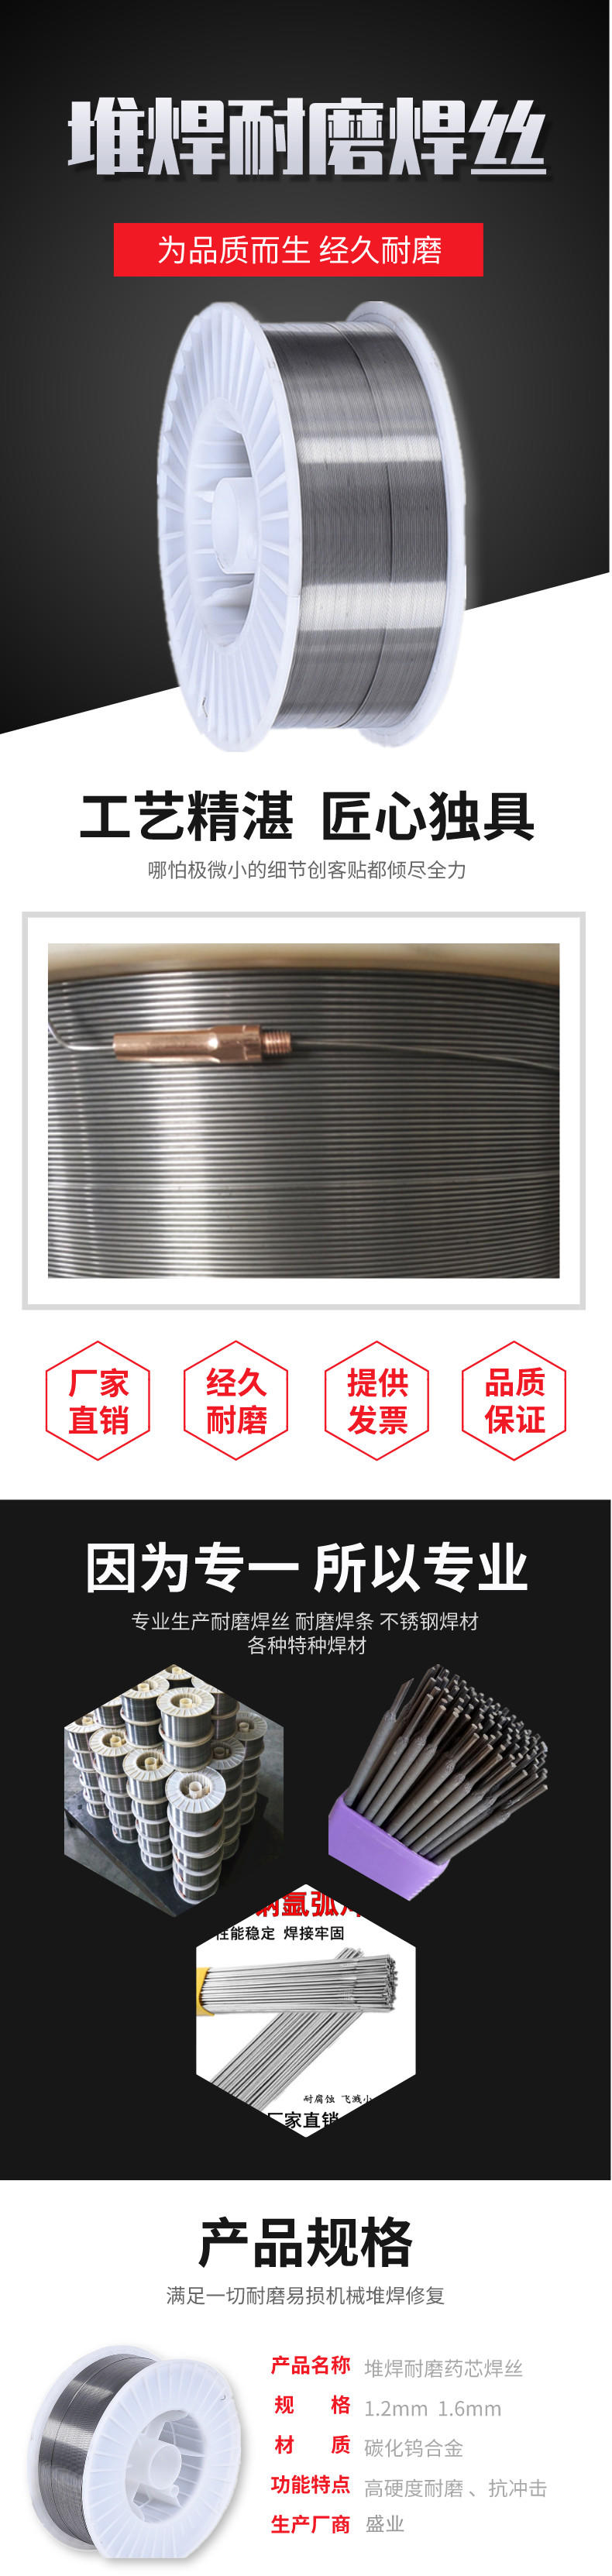 石油钻杆接头耐磨药芯焊丝 合金堆焊耐磨焊丝示例图3